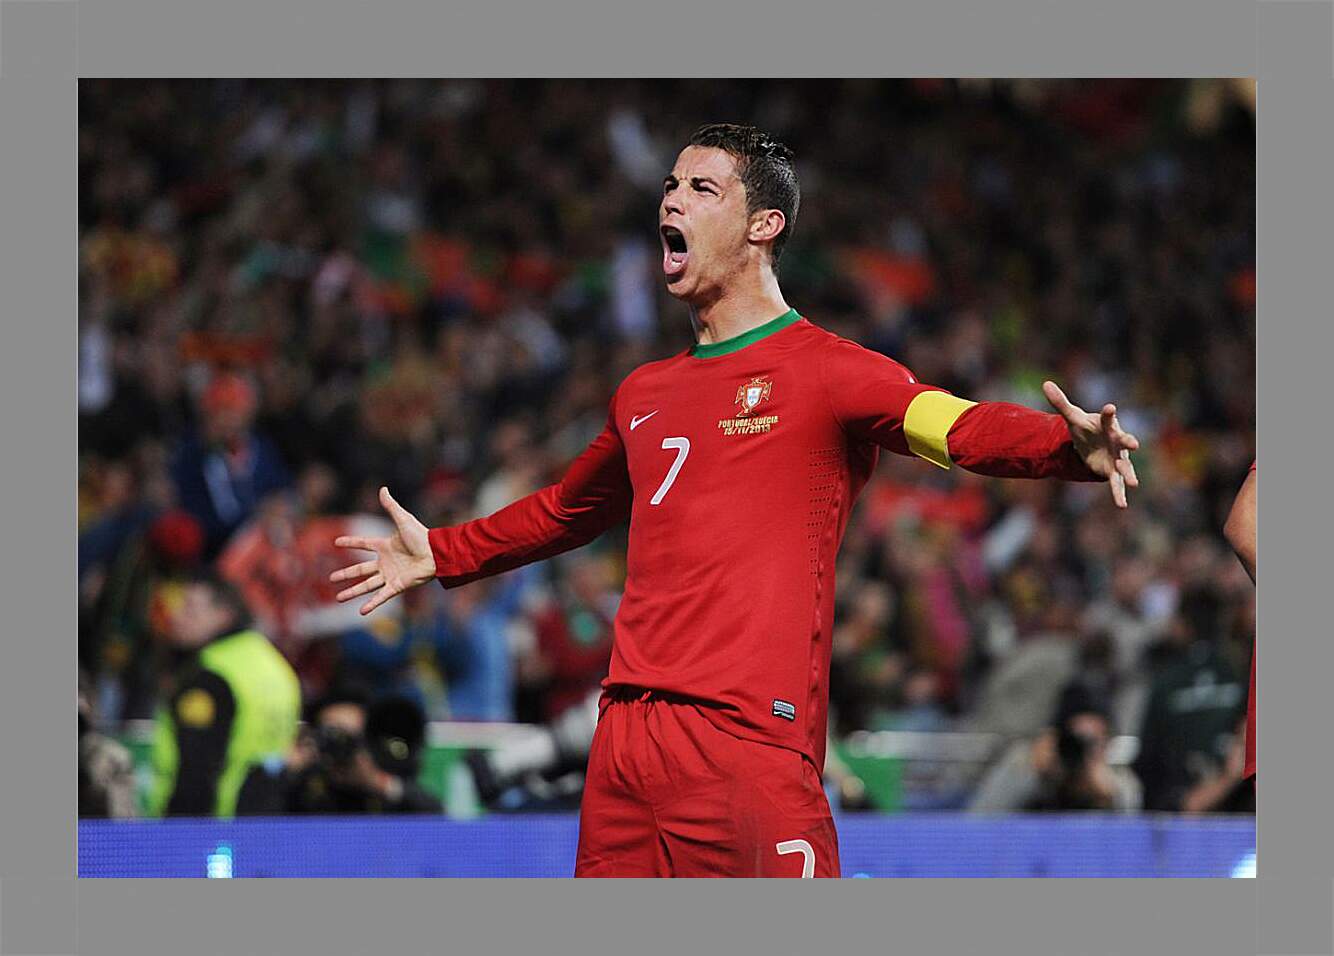 Картина в раме - Криштиану Роналду капитан сборной Португалии.